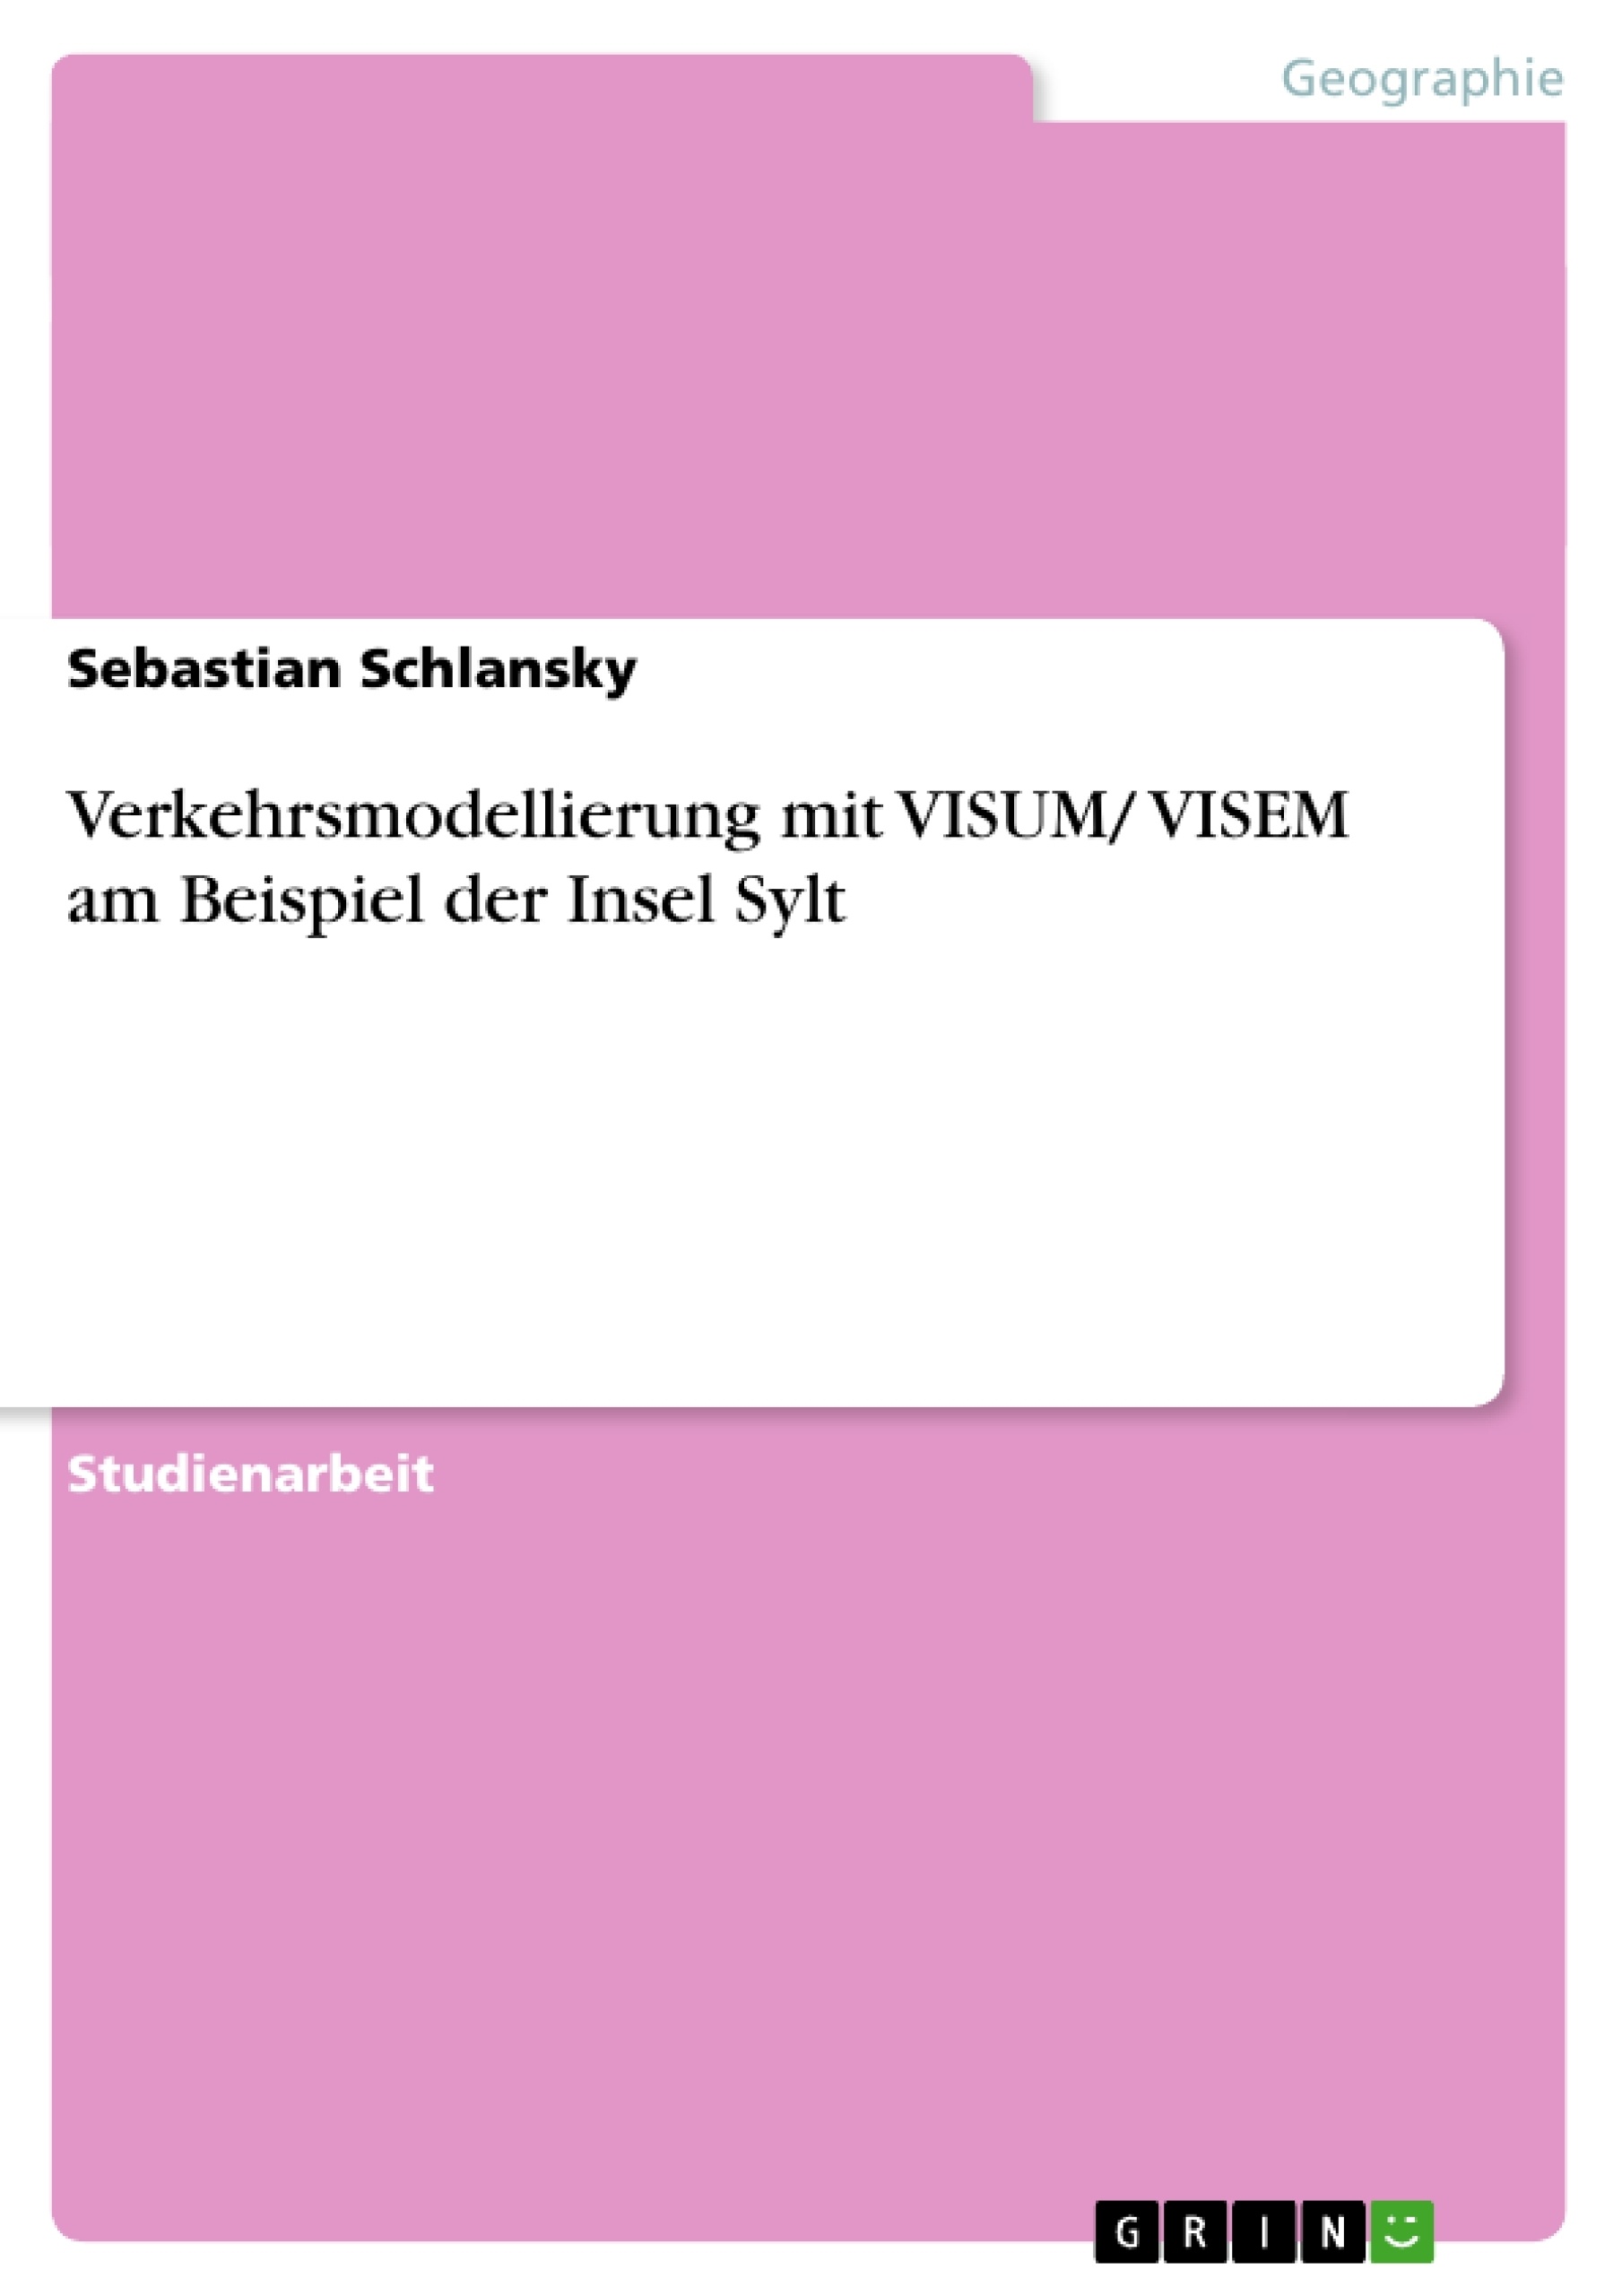 Título: Verkehrsmodellierung mit VISUM/ VISEM am Beispiel der Insel Sylt